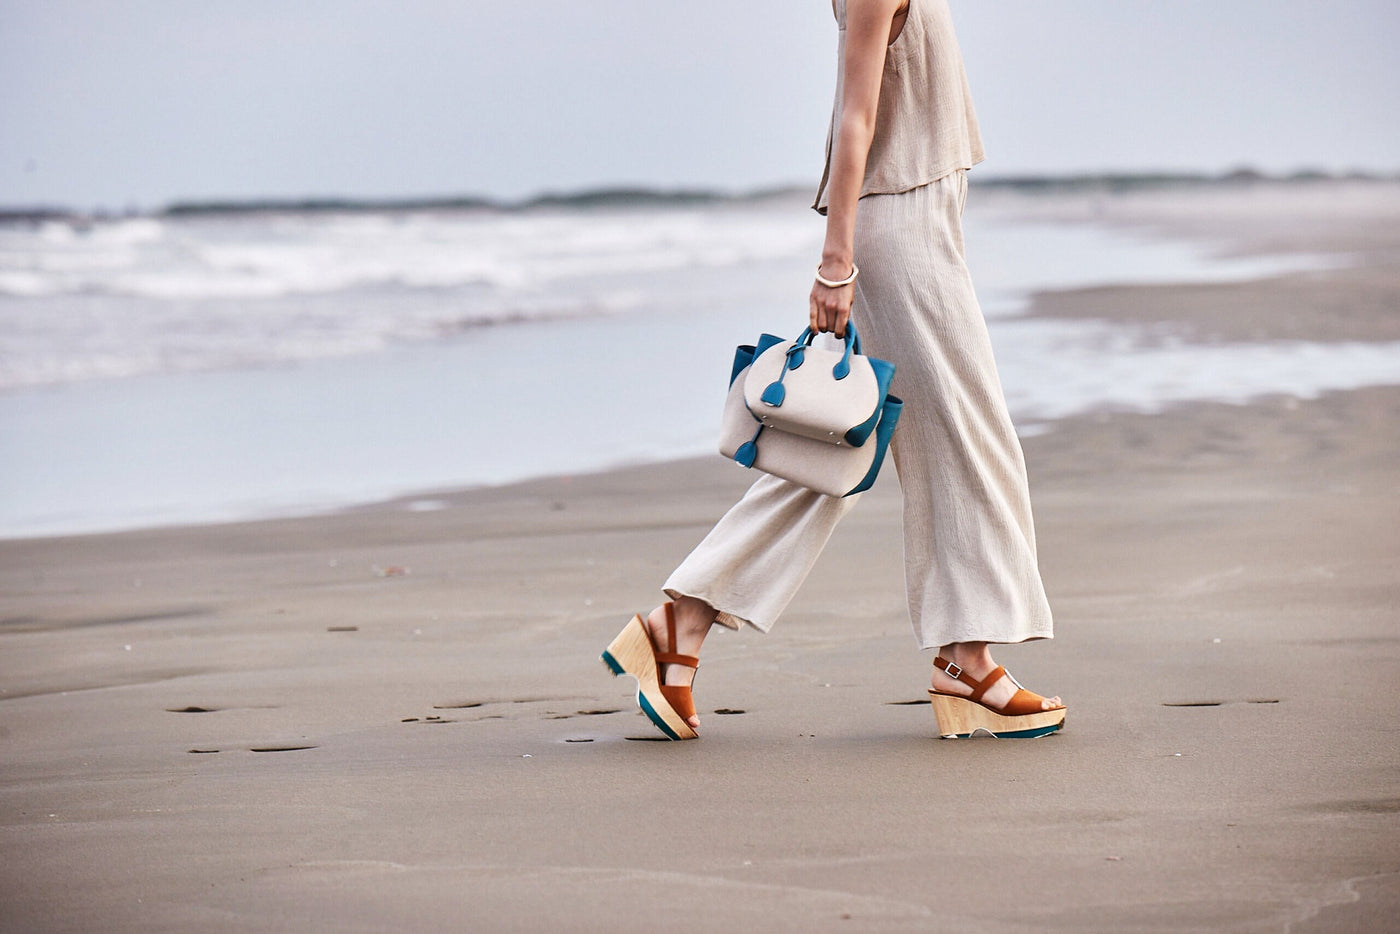 Frau mit eleganter Strandtasche spaziert am sonnigen Strand.